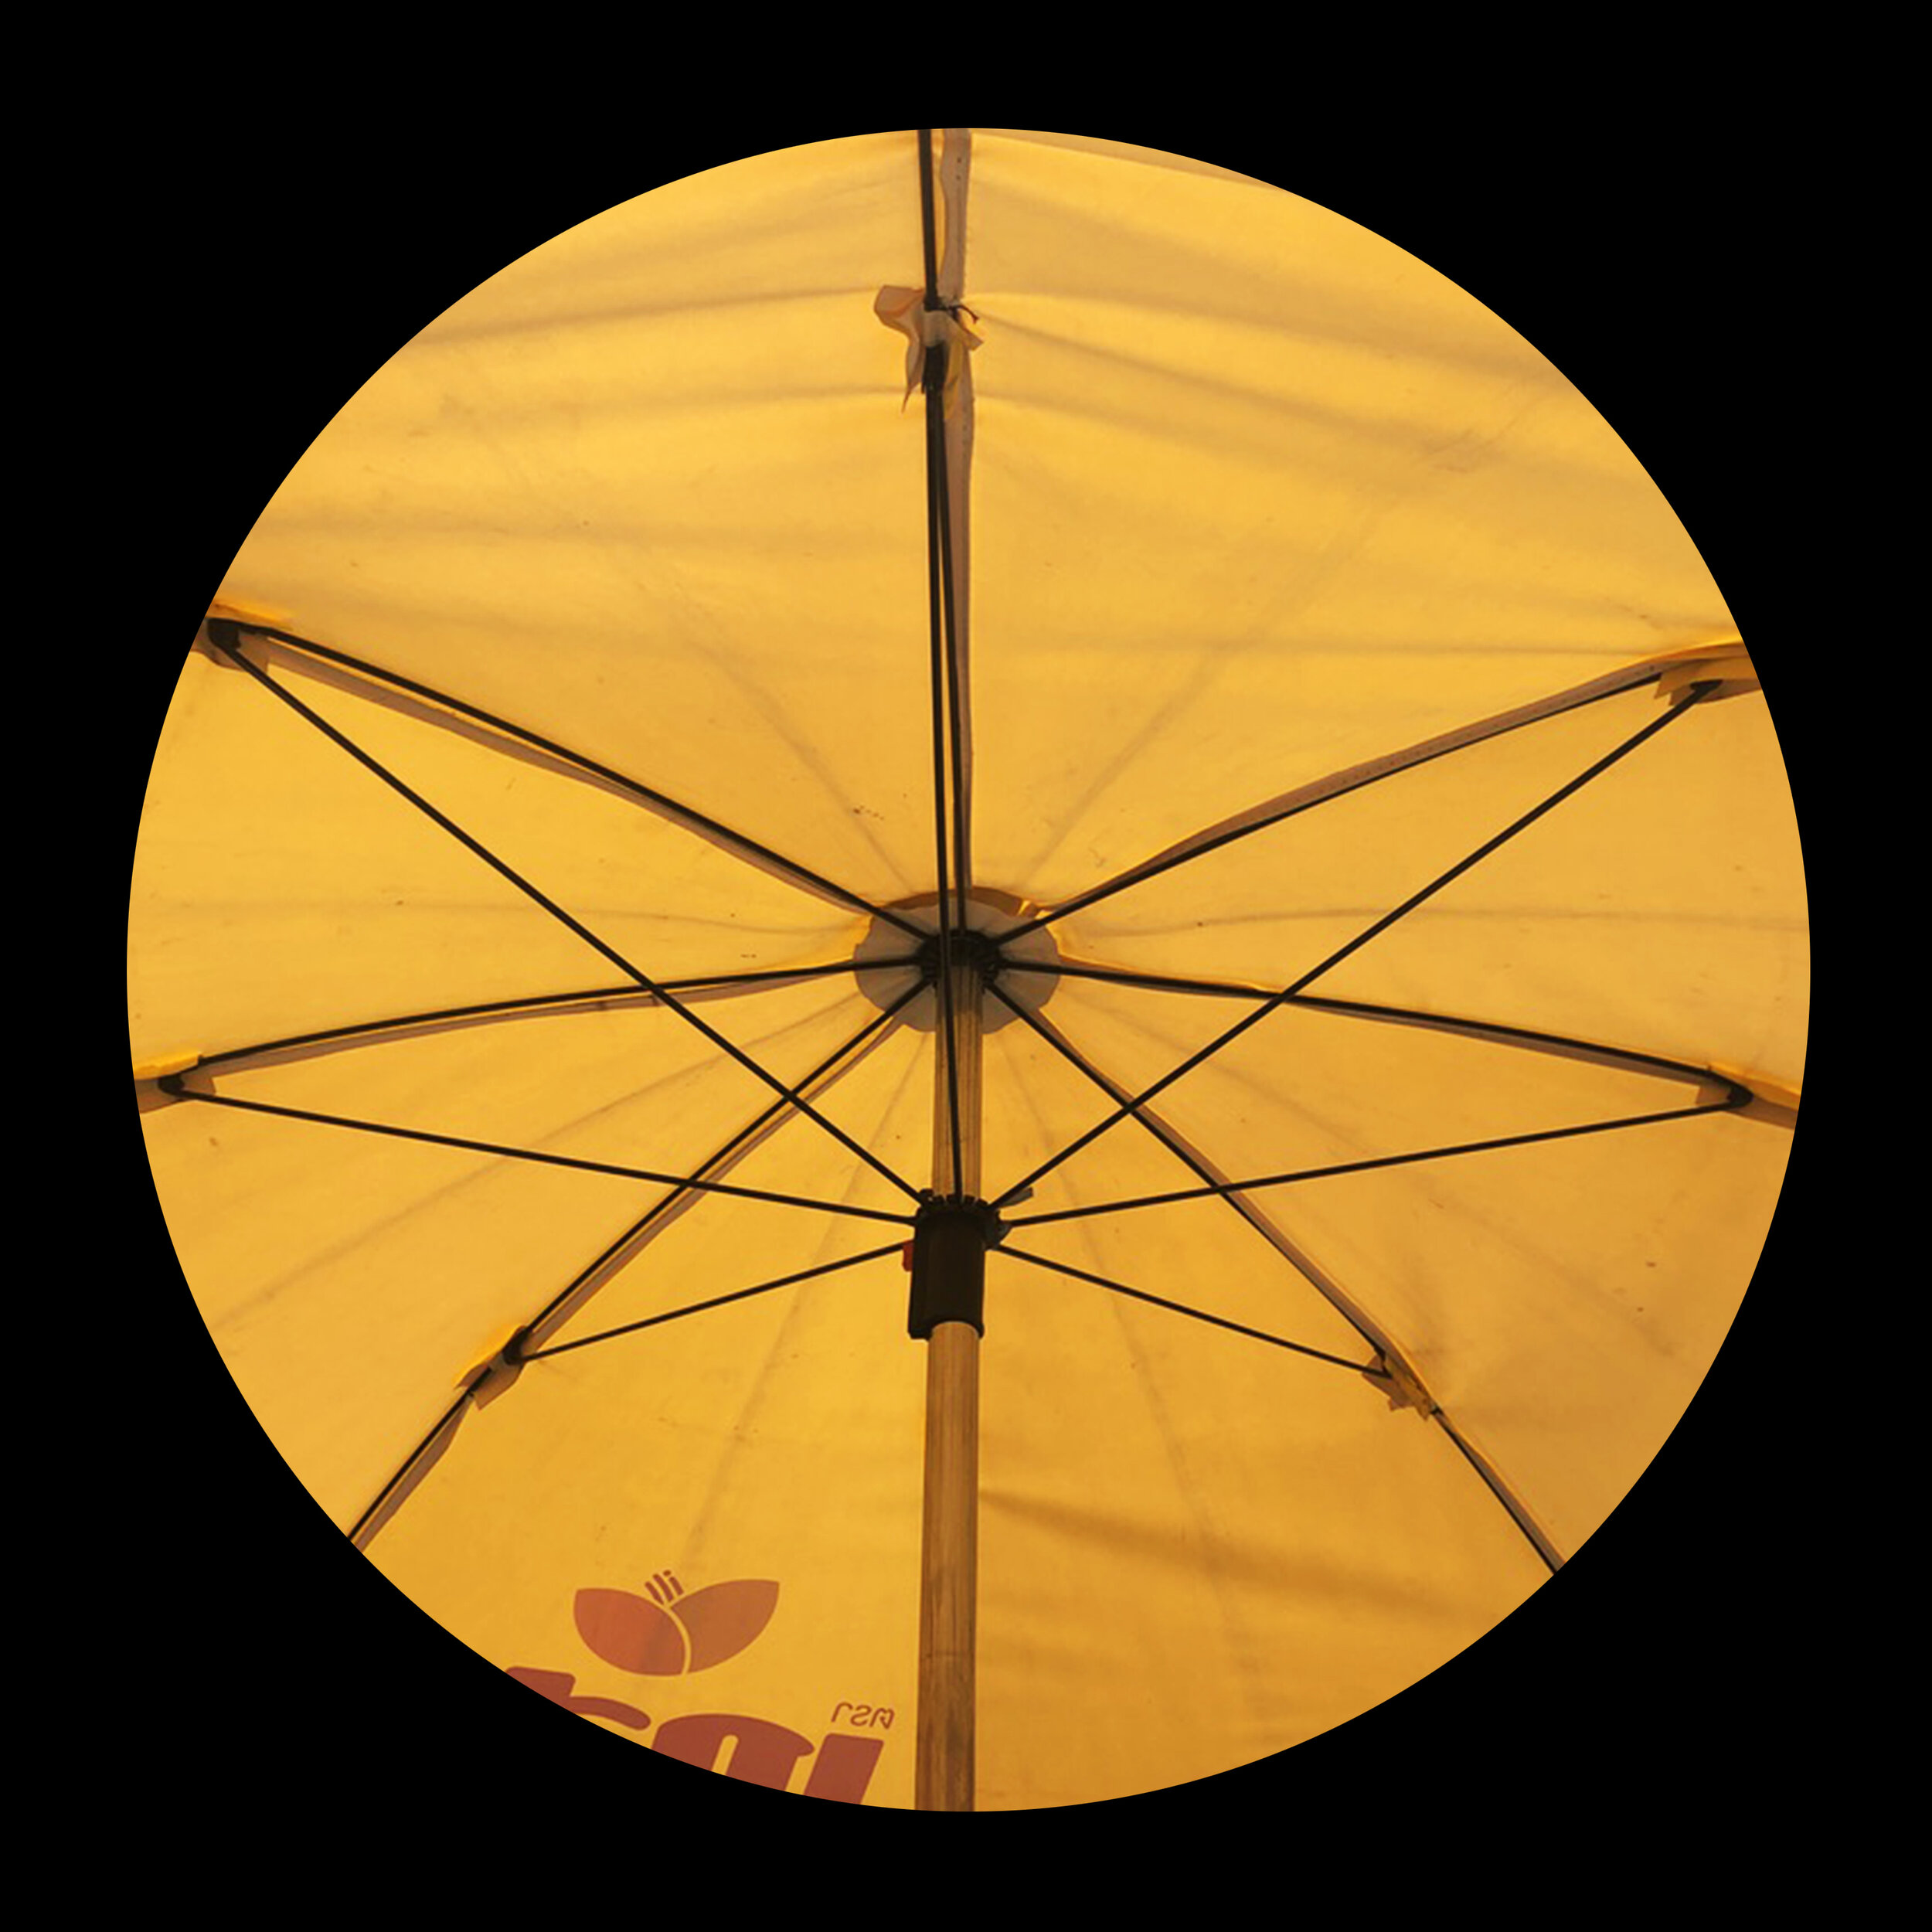 umbrellas_inner_31.jpg